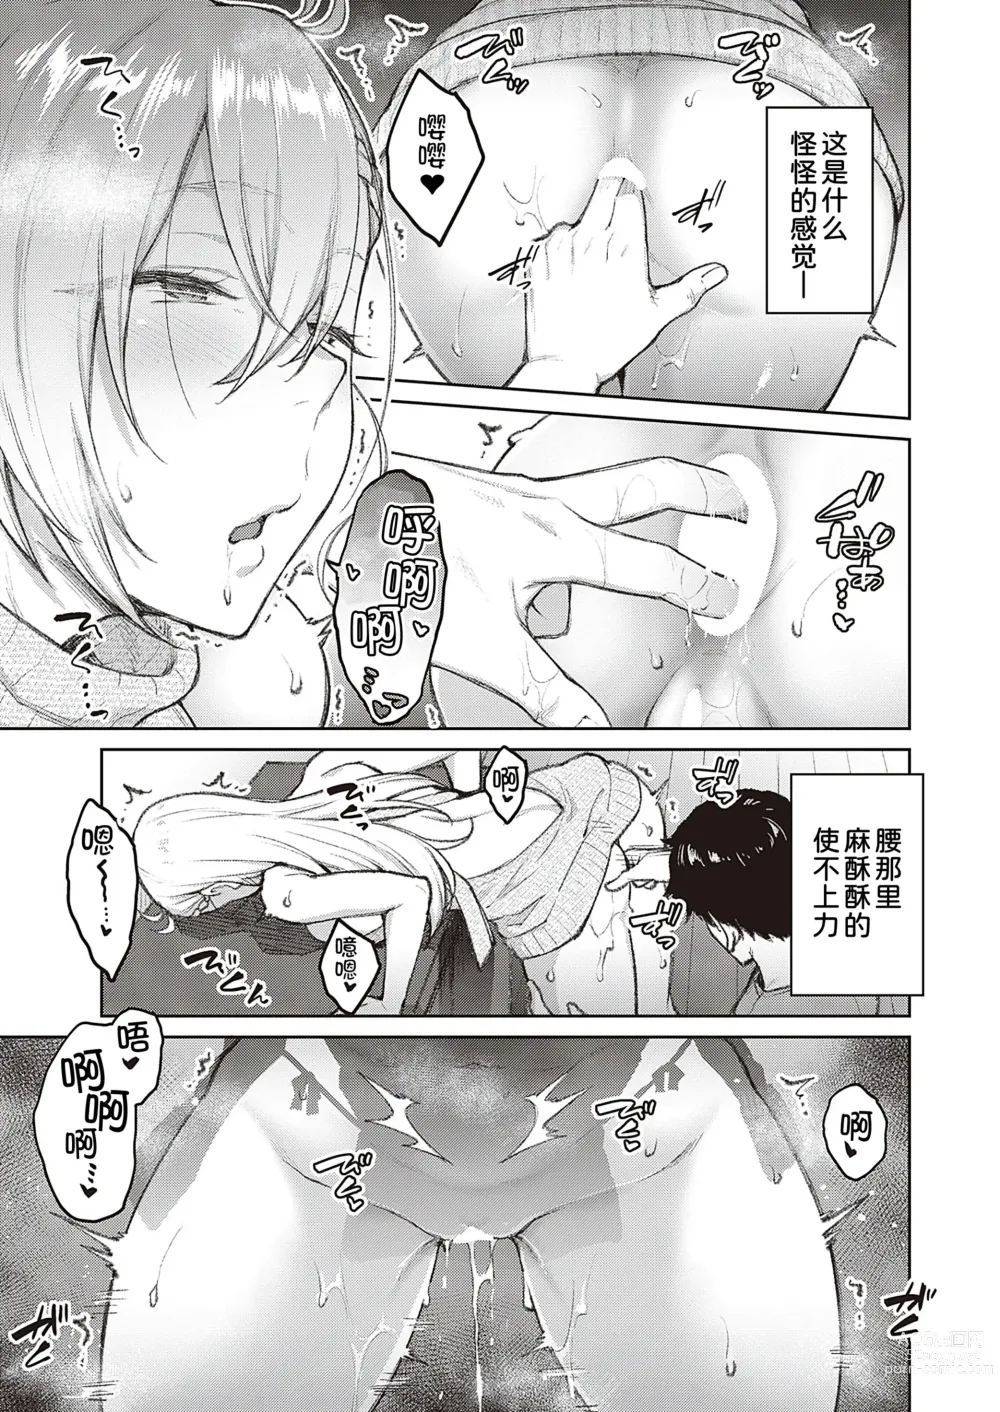 Page 14 of manga Tsugi wa Kou wa Ikanai kara na!2